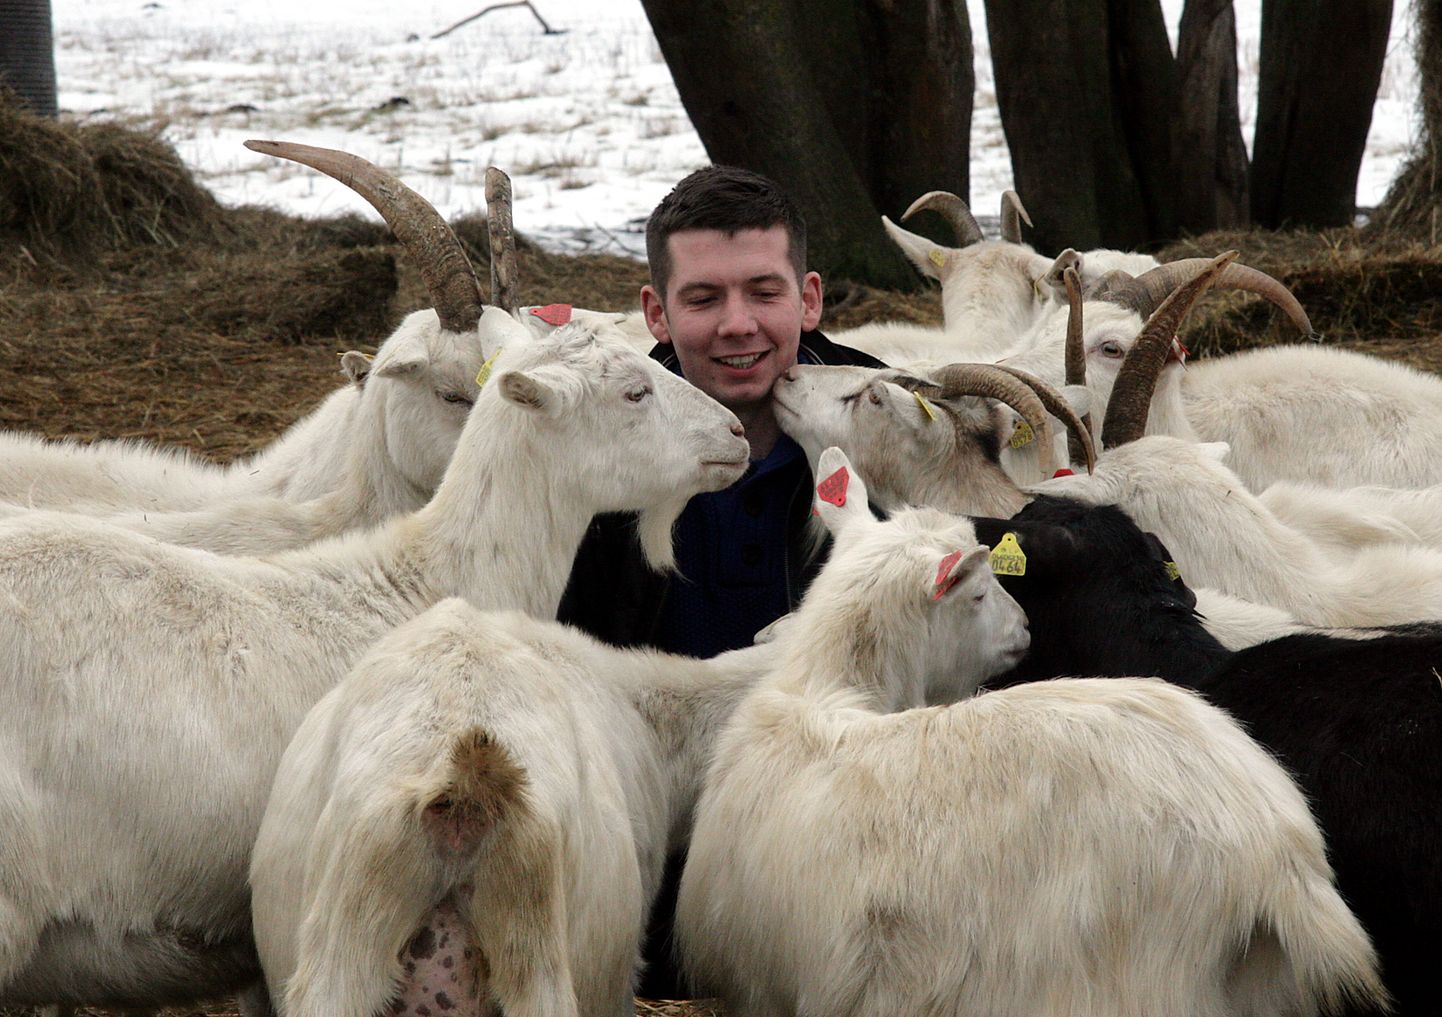 Мартин Репинский, десять лет назад прославившийся разведением коз, продал ферму и поставил точку в своем бизнесе в Ида-Вирумаа.